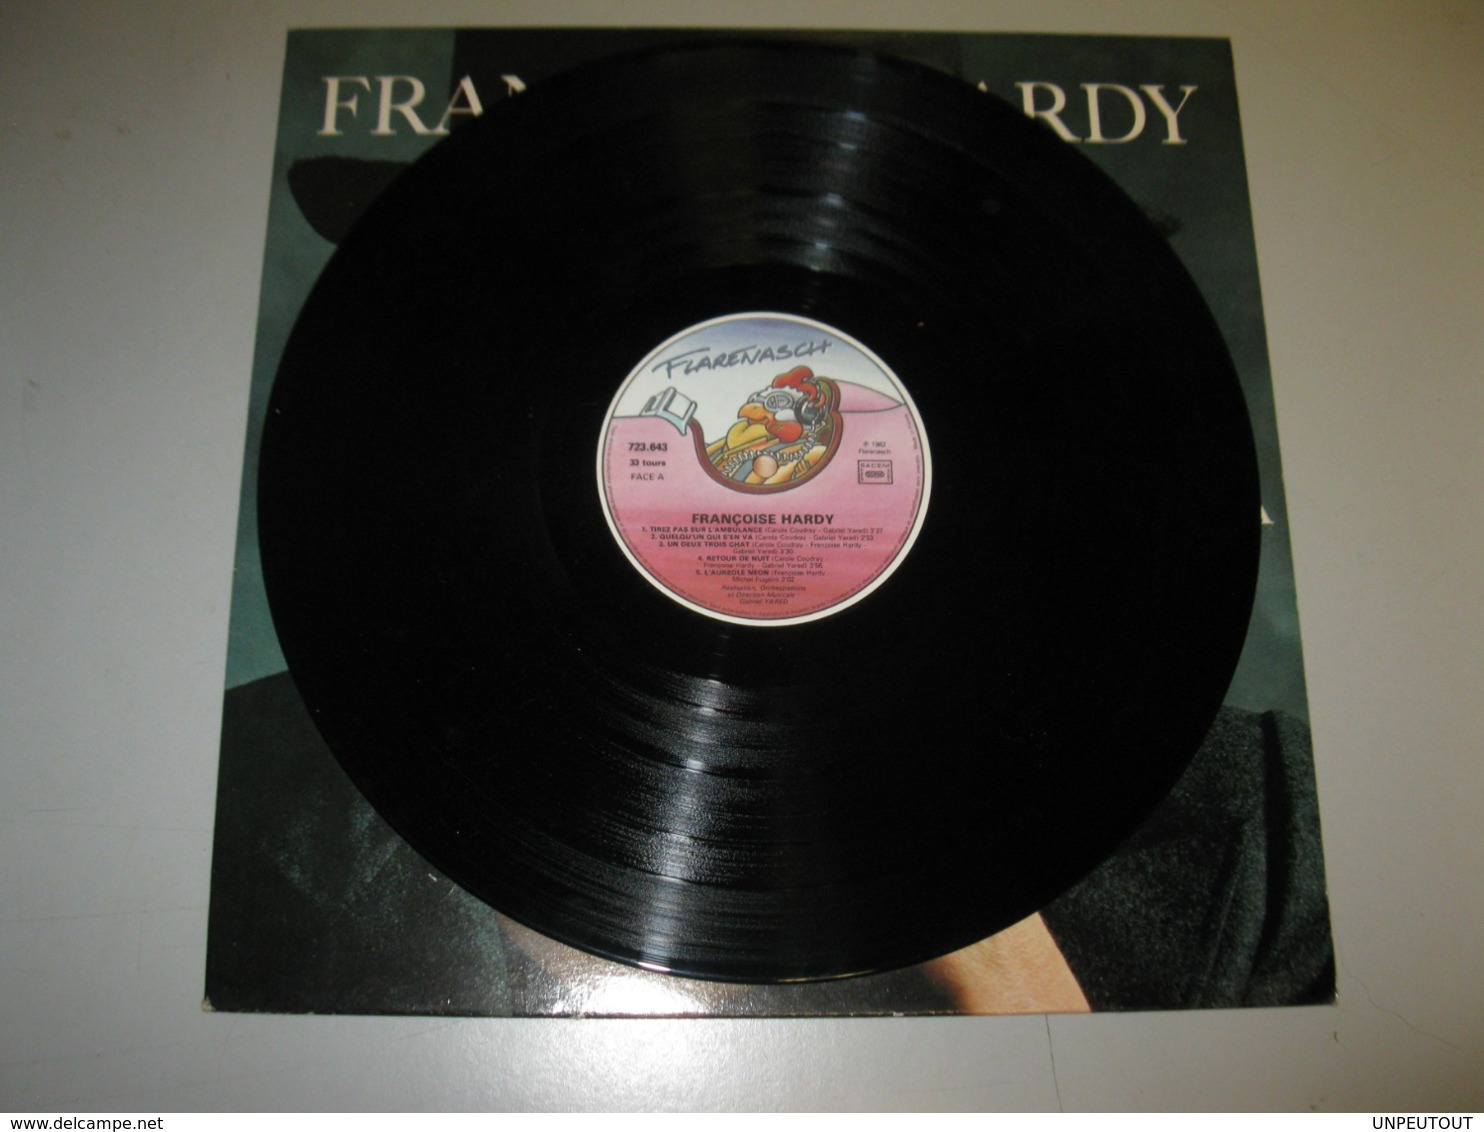 VINYLE FRANCOISE HARDY "QUELQU'UN S'EN VA" 33 T FLARENASCH / WEA (1982) - Other - French Music